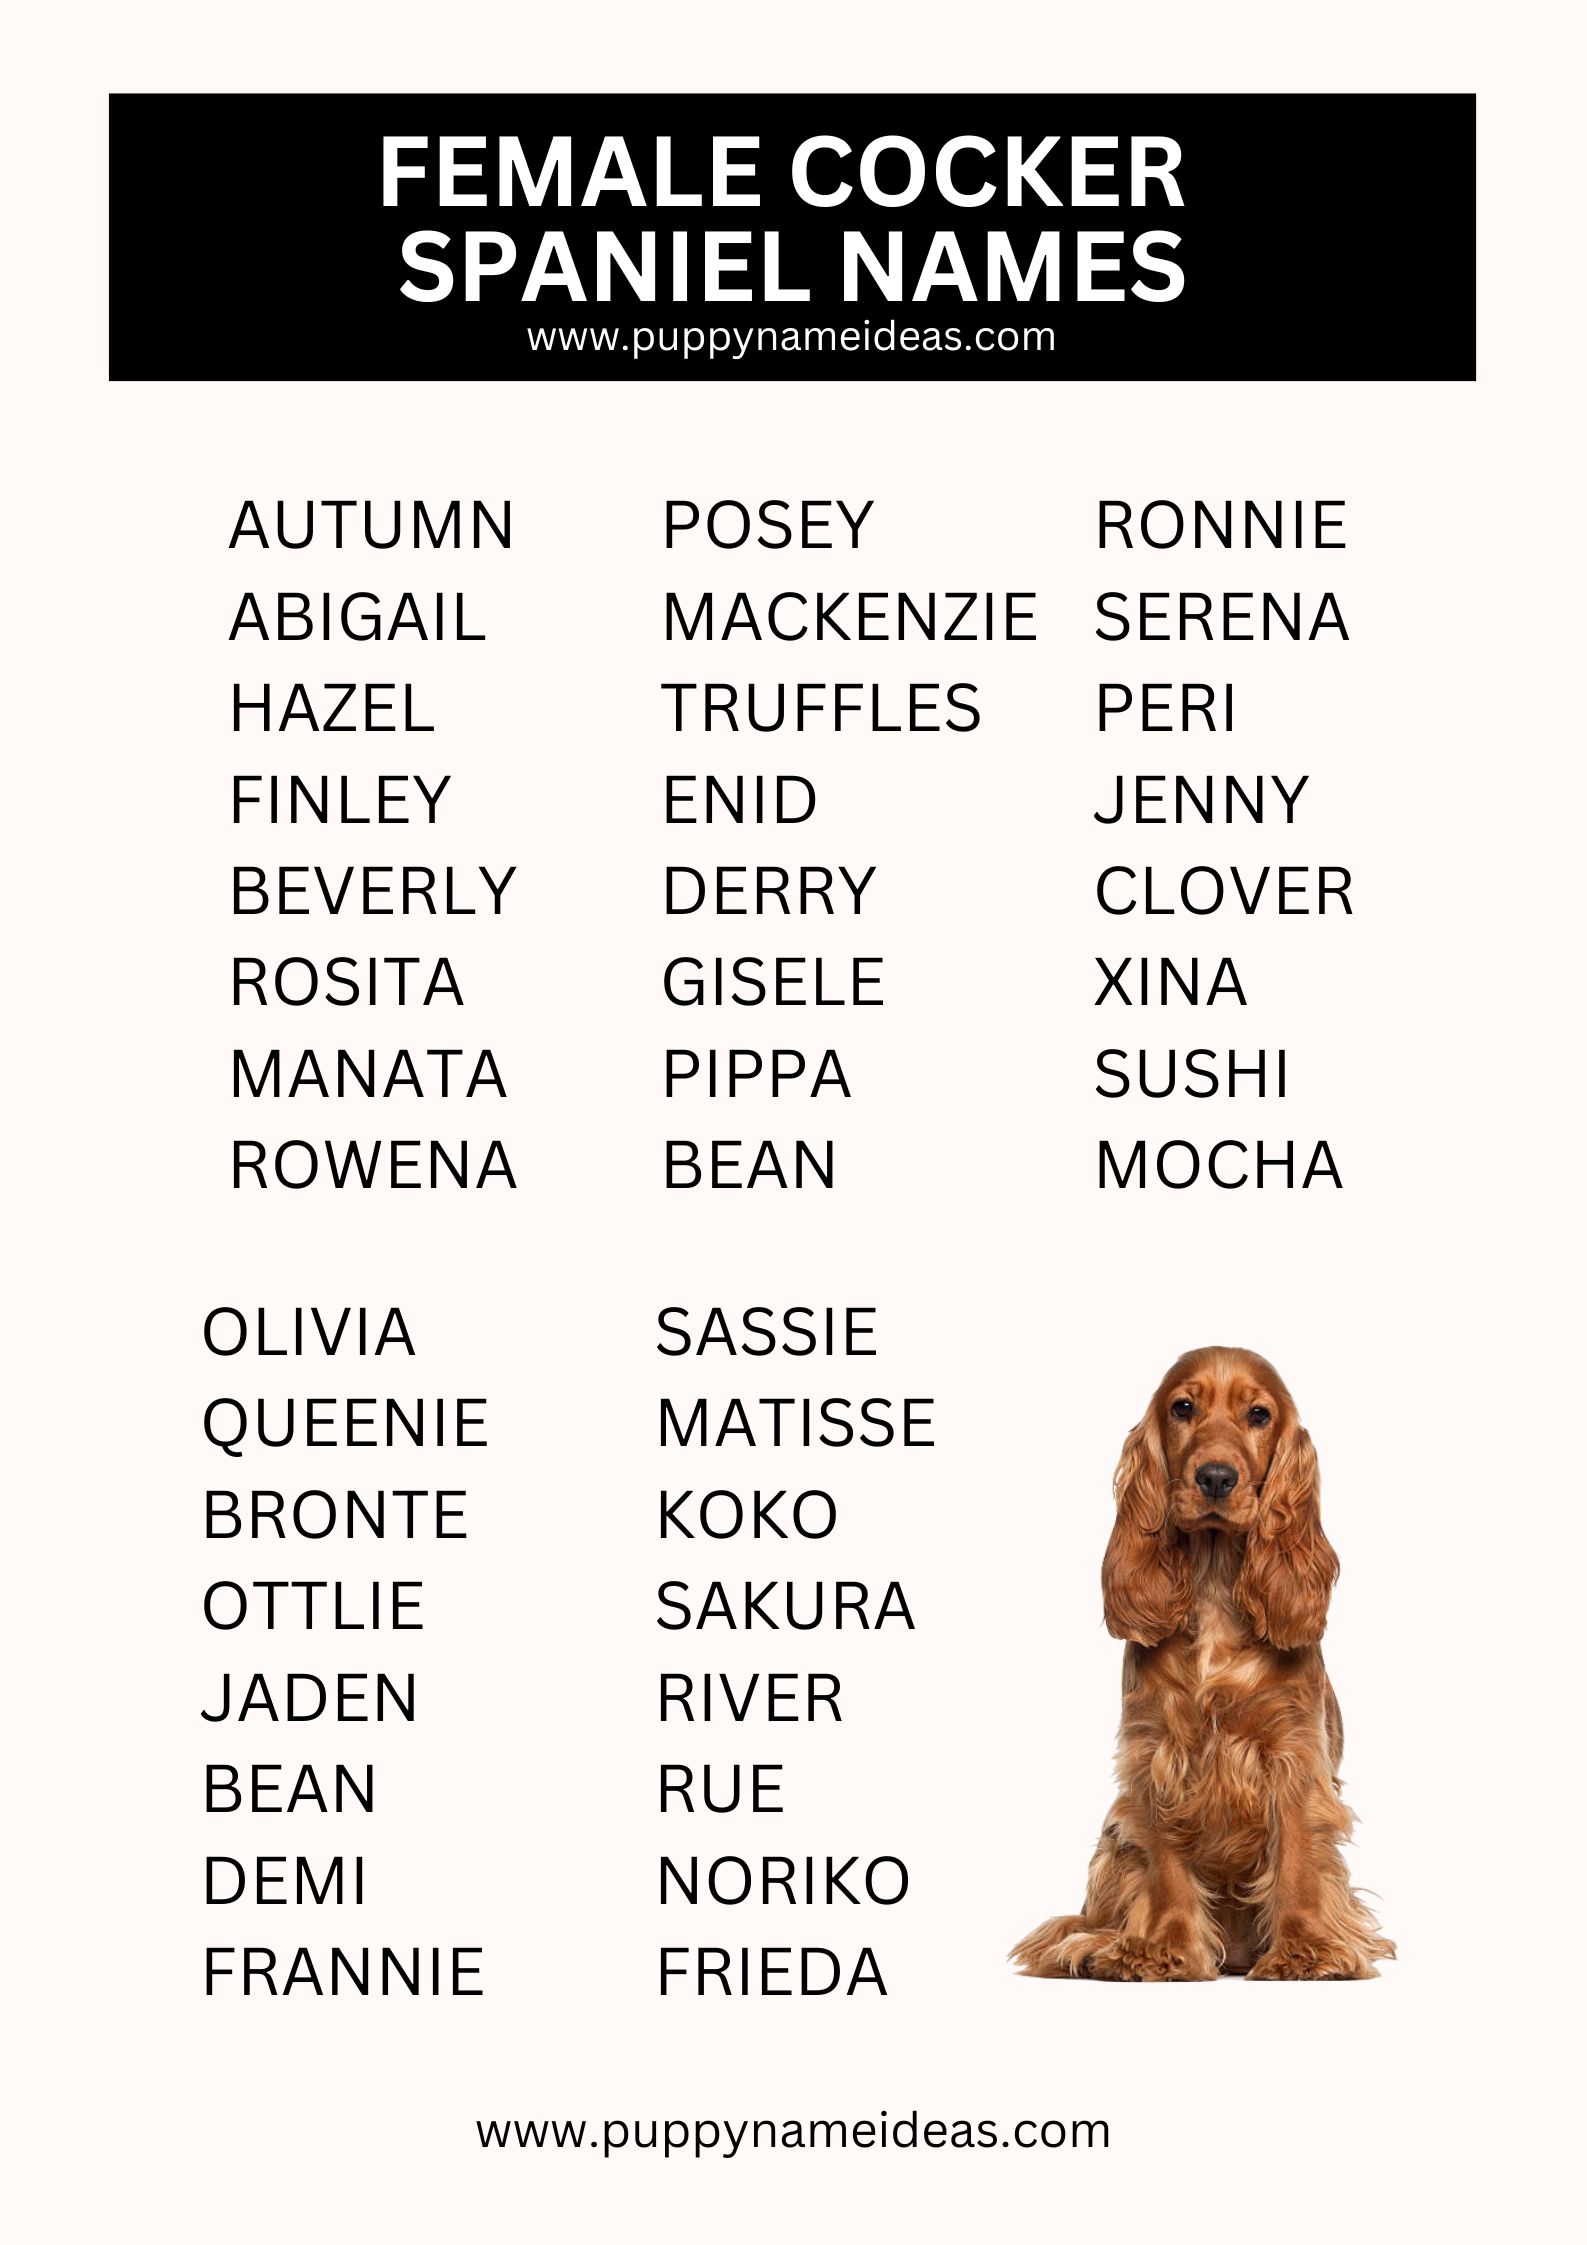 List Of Female Cocker Spaniel Names